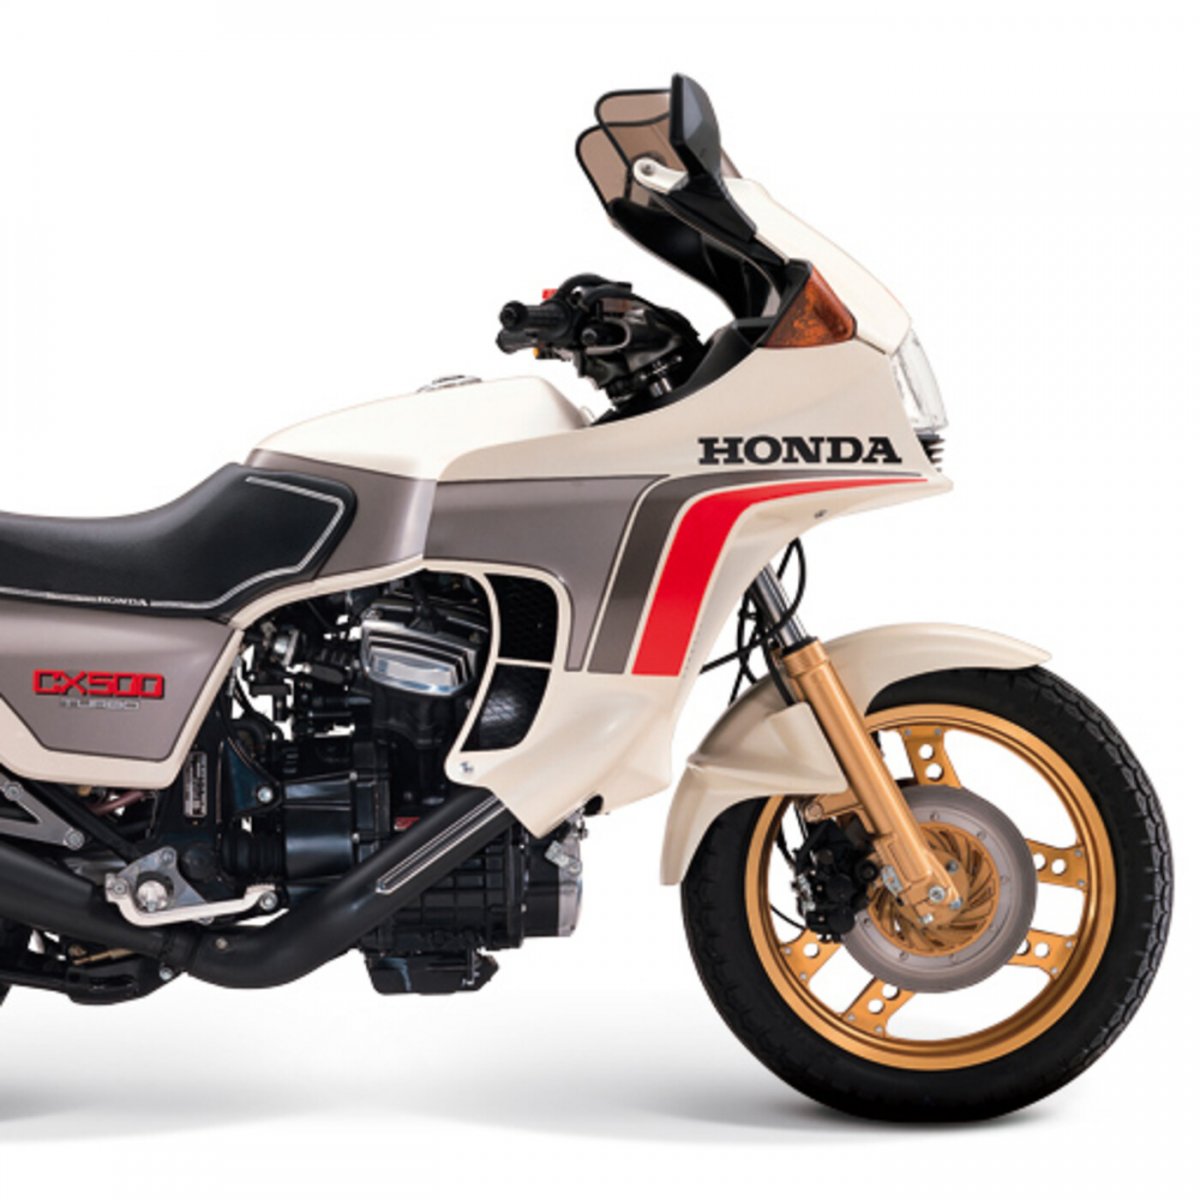 Honda sx1300